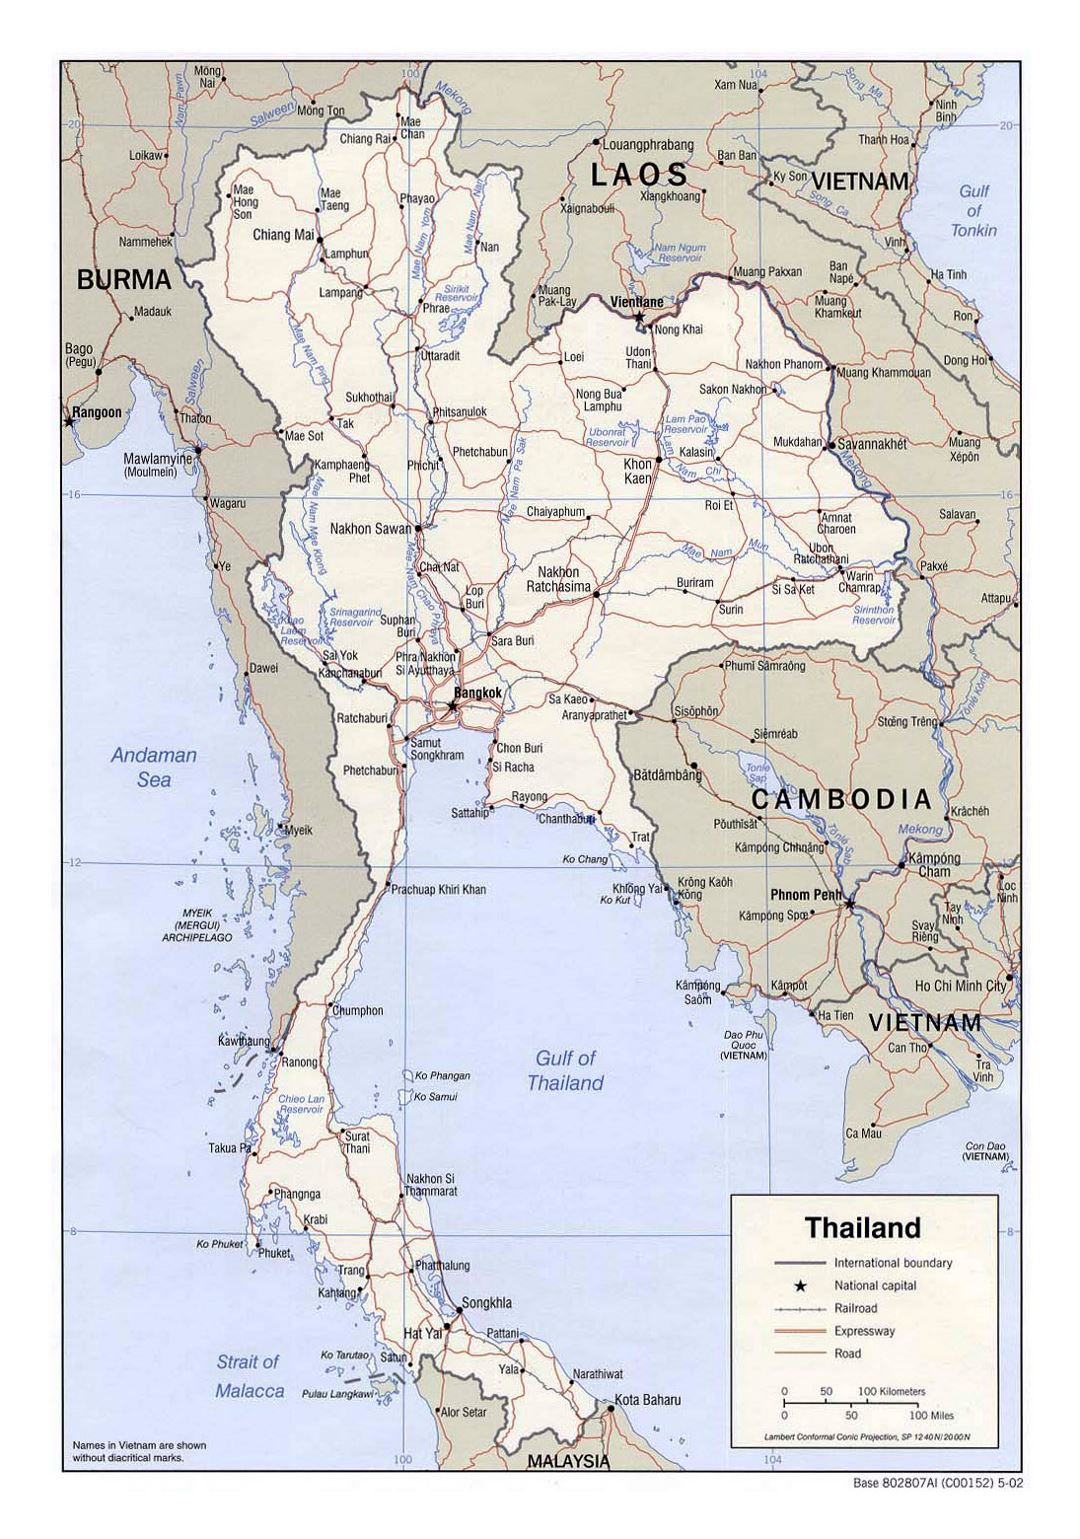 Детальная политическая карта Таиланда с дорогами, железными дорогами и крупными городами - 2002